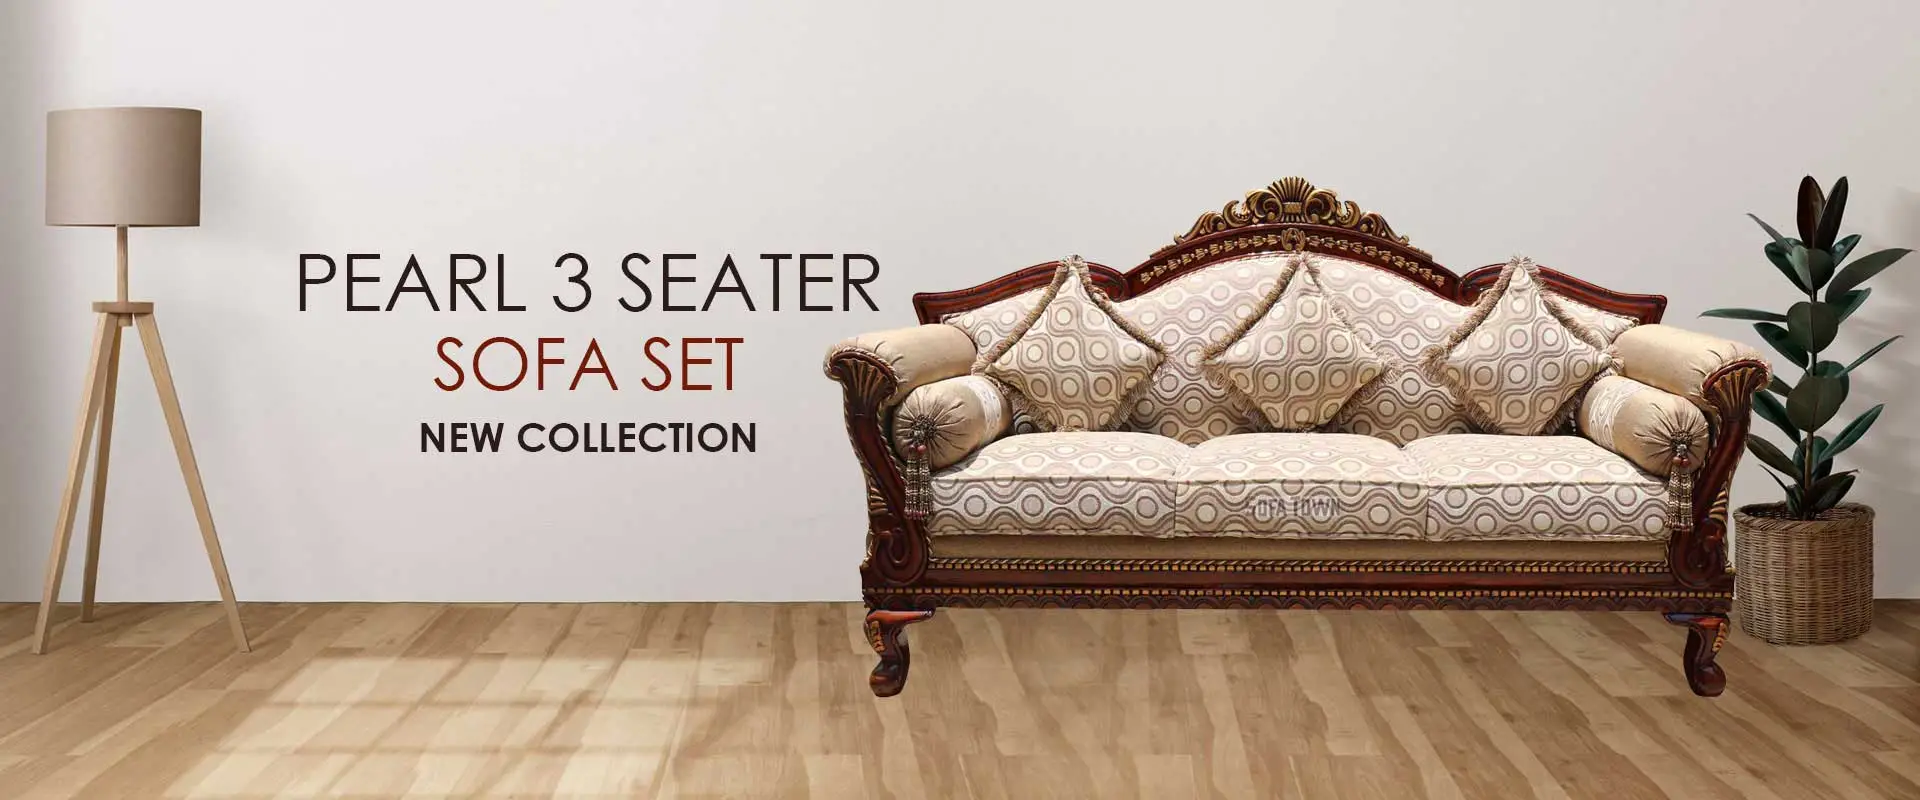 Pearl 3 Seater Sofa Set  Manufacturers in Koderma